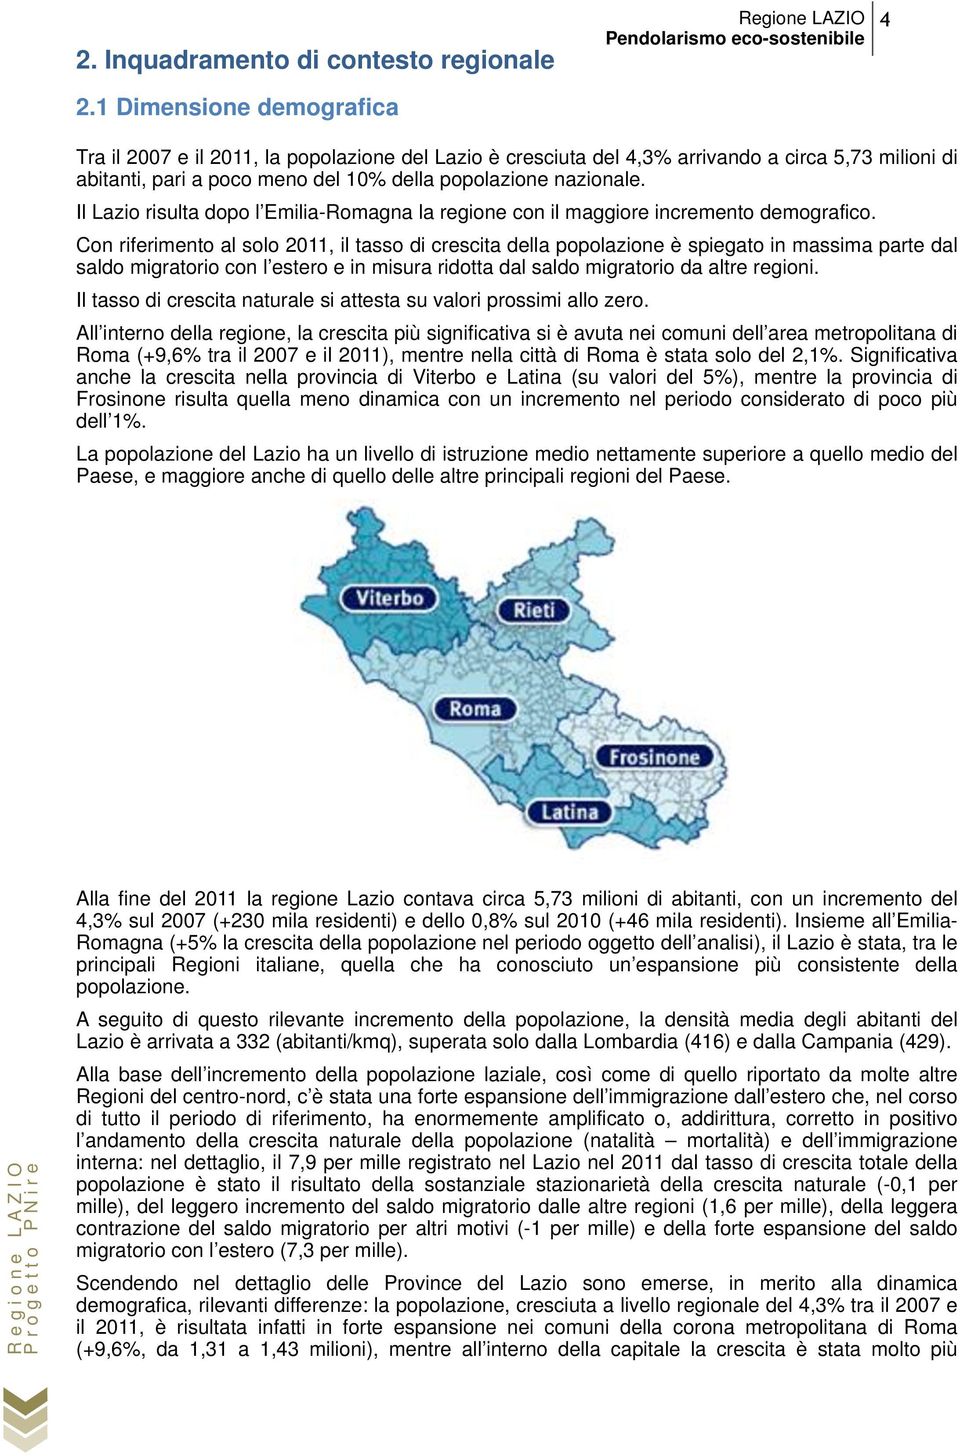 Il Lazio risulta dopo l Emilia-Romagna la regione con il maggiore incremento demografico.